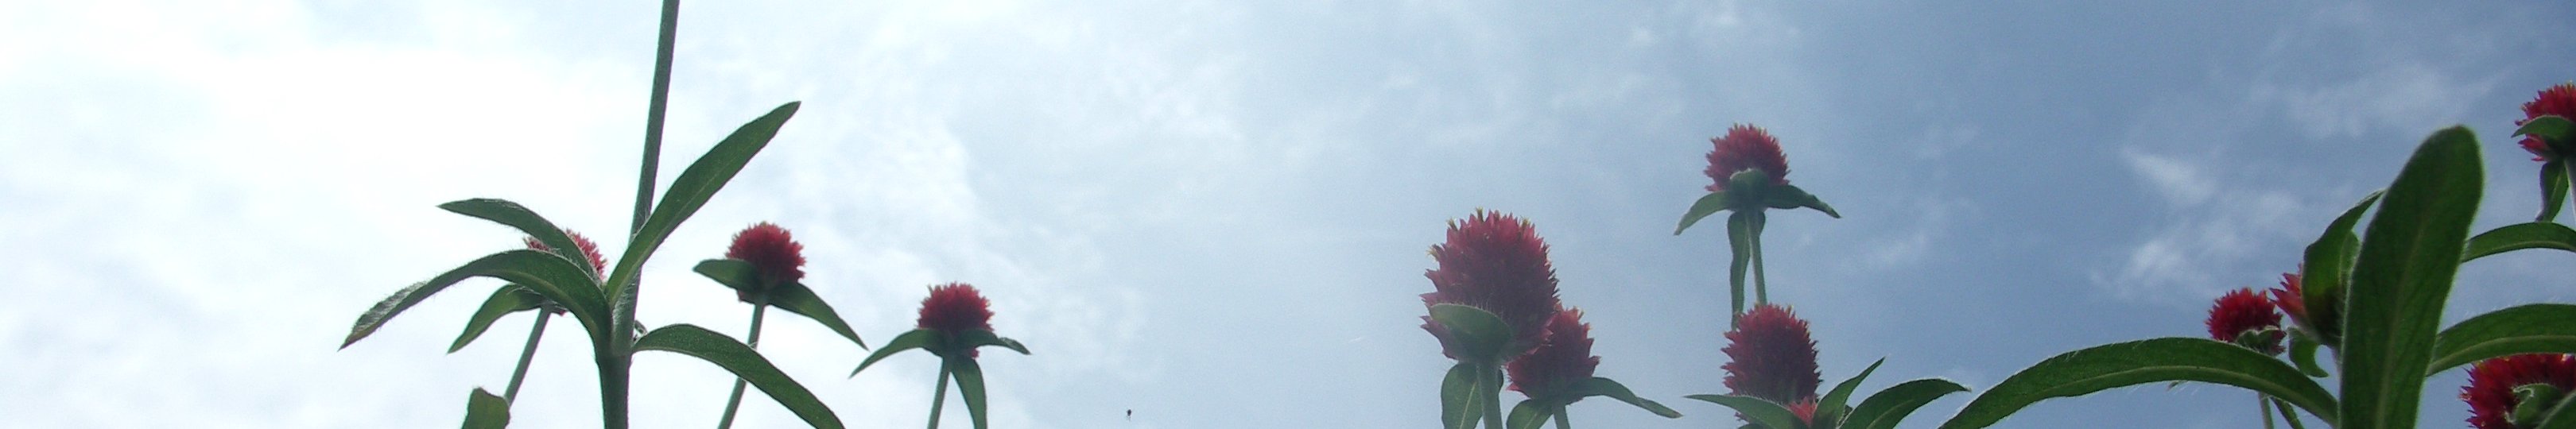 人権(写真:東白川村の風景&lt;花と空&gt;)